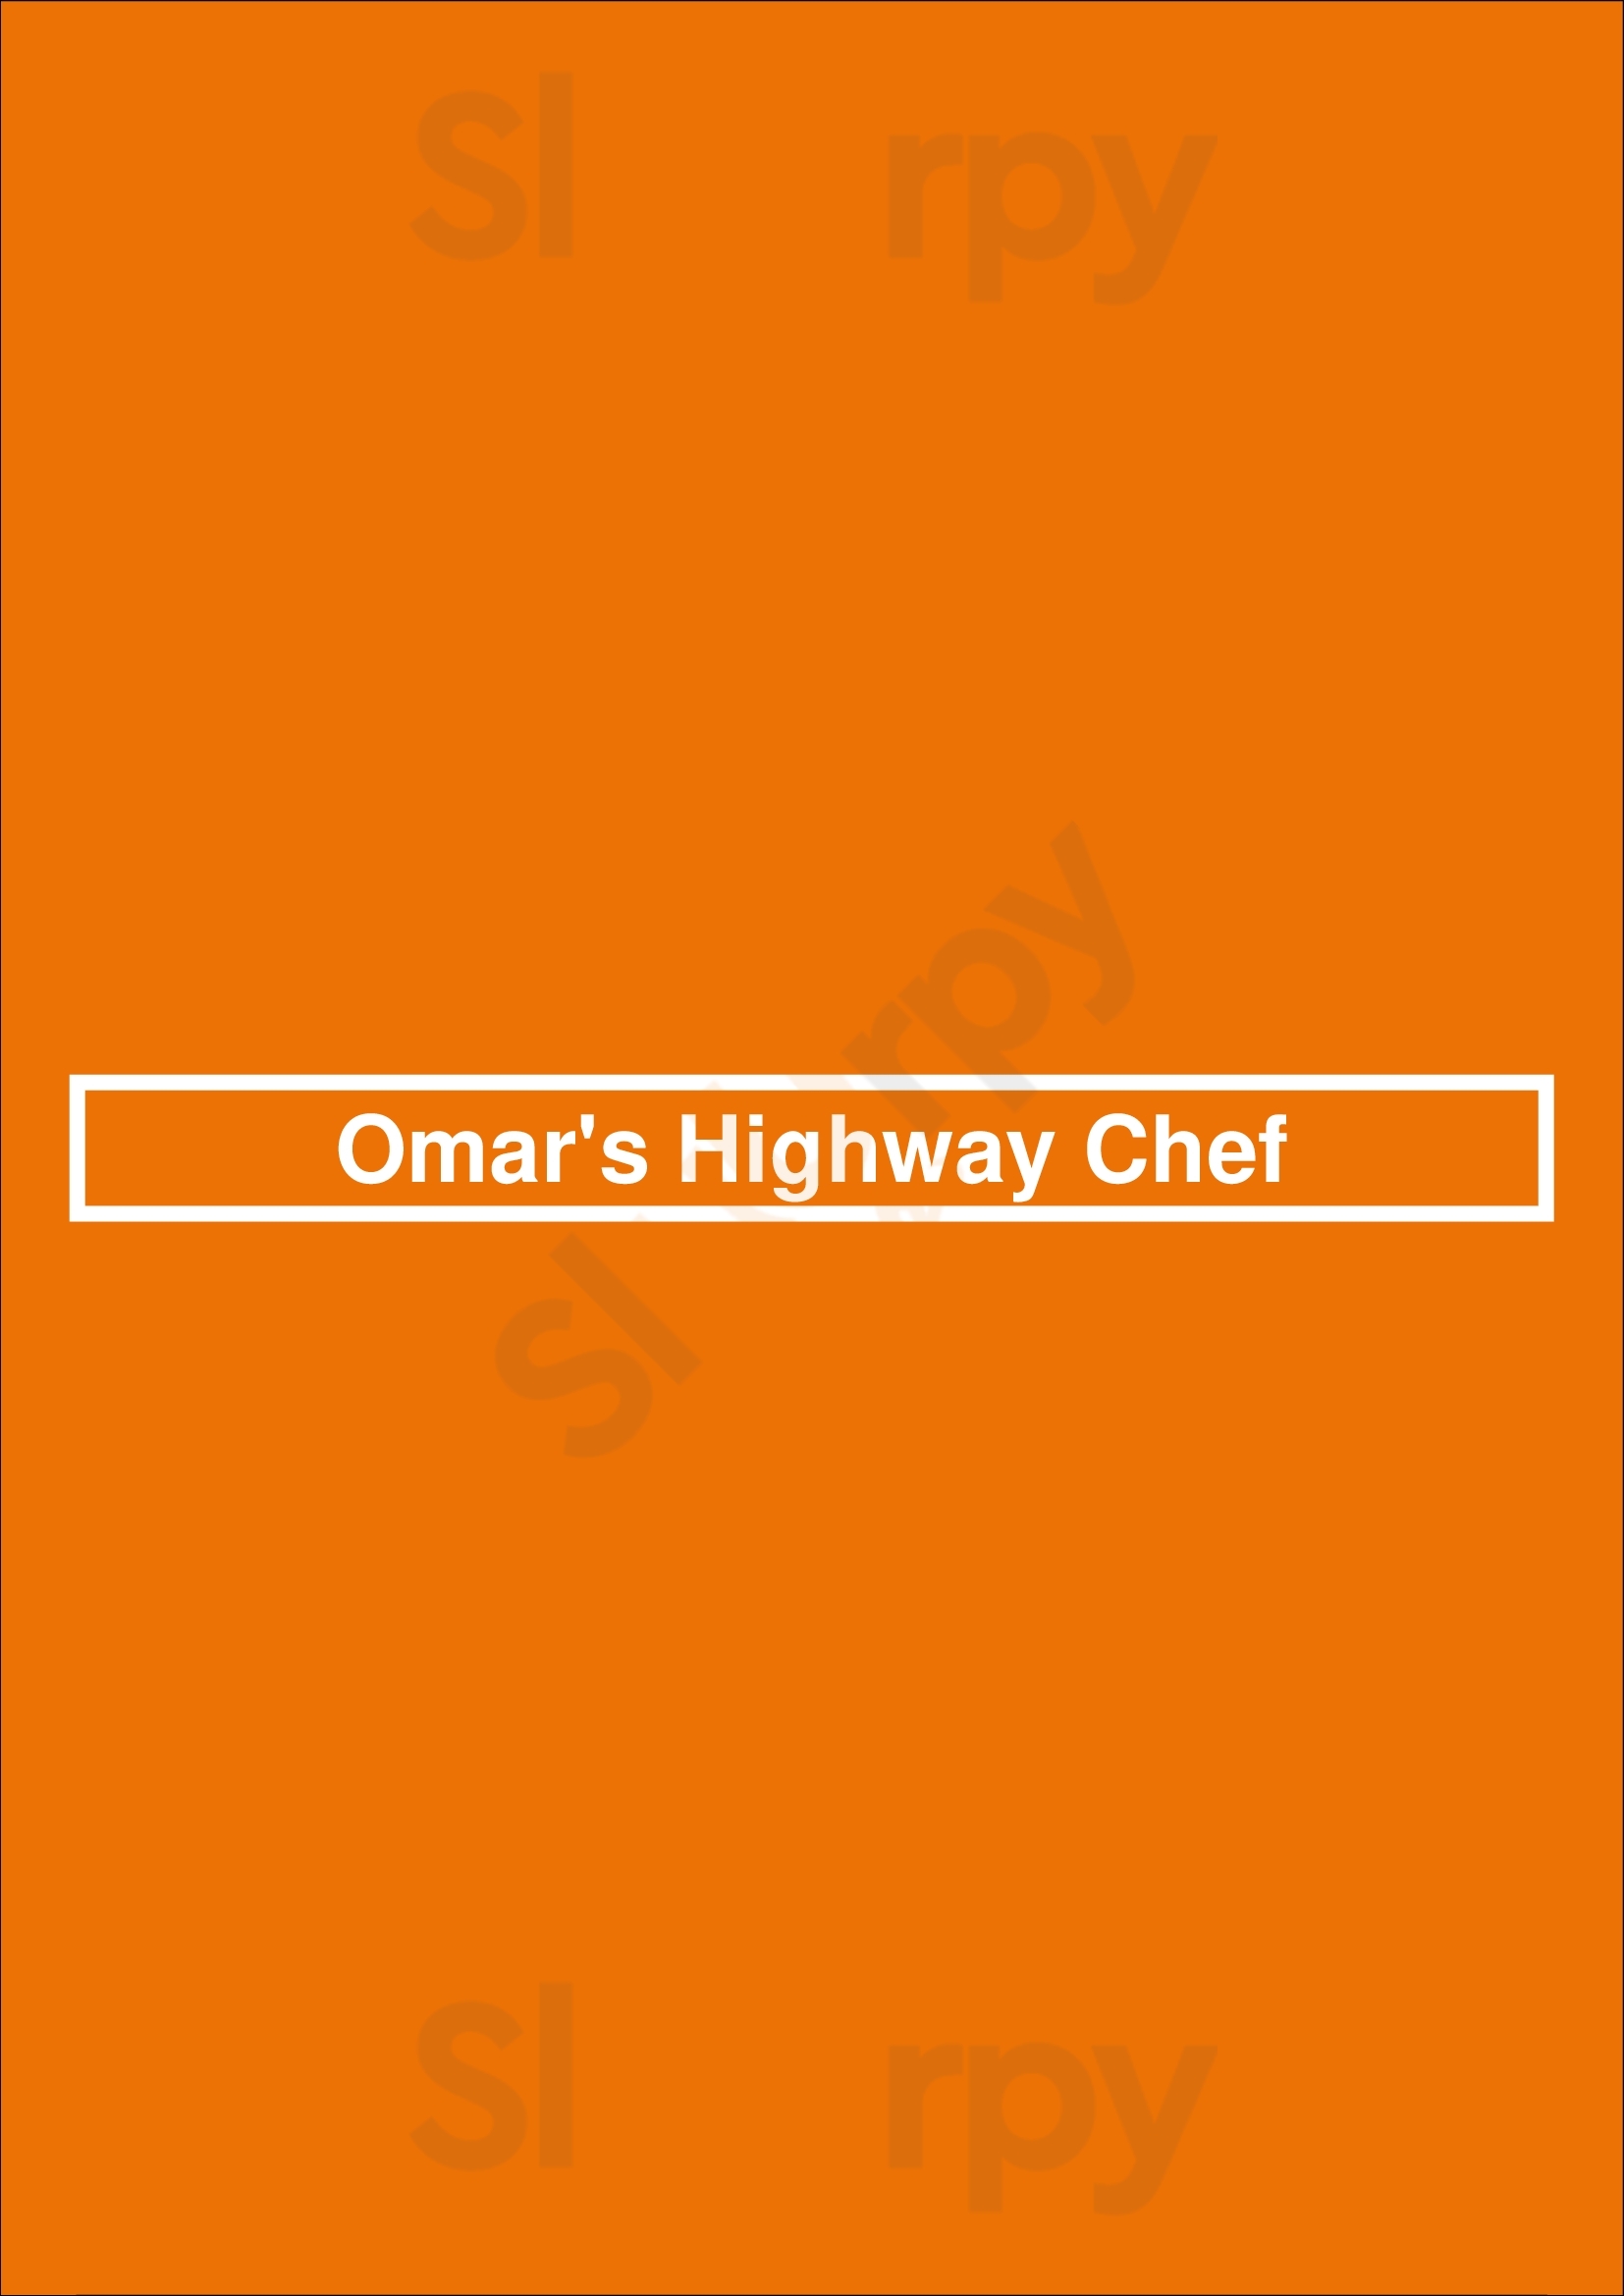 Omar's Highway Chef Tucson Menu - 1